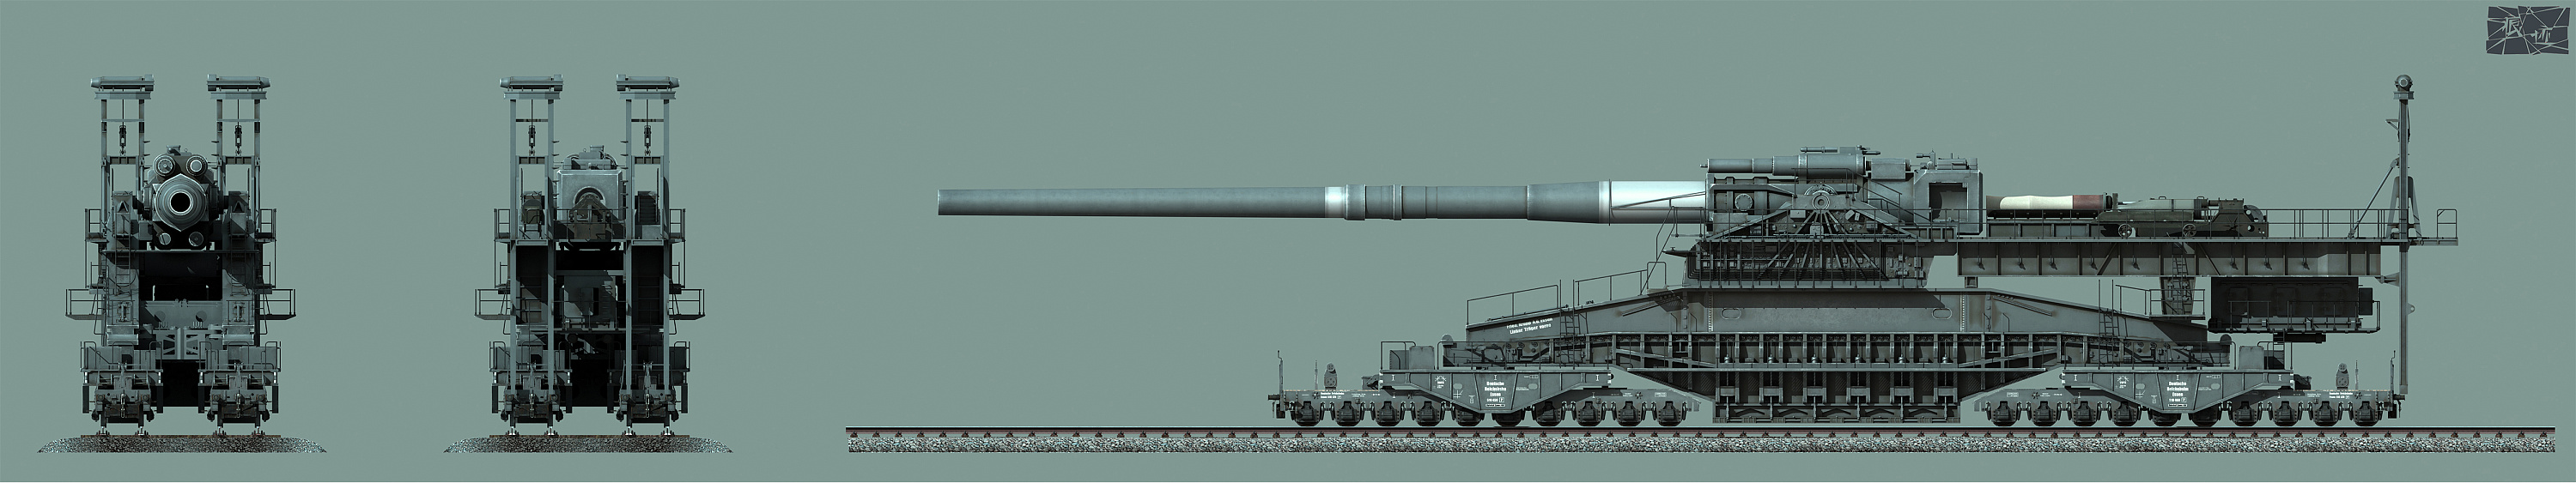 古斯塔夫列车炮 gustaf train gun